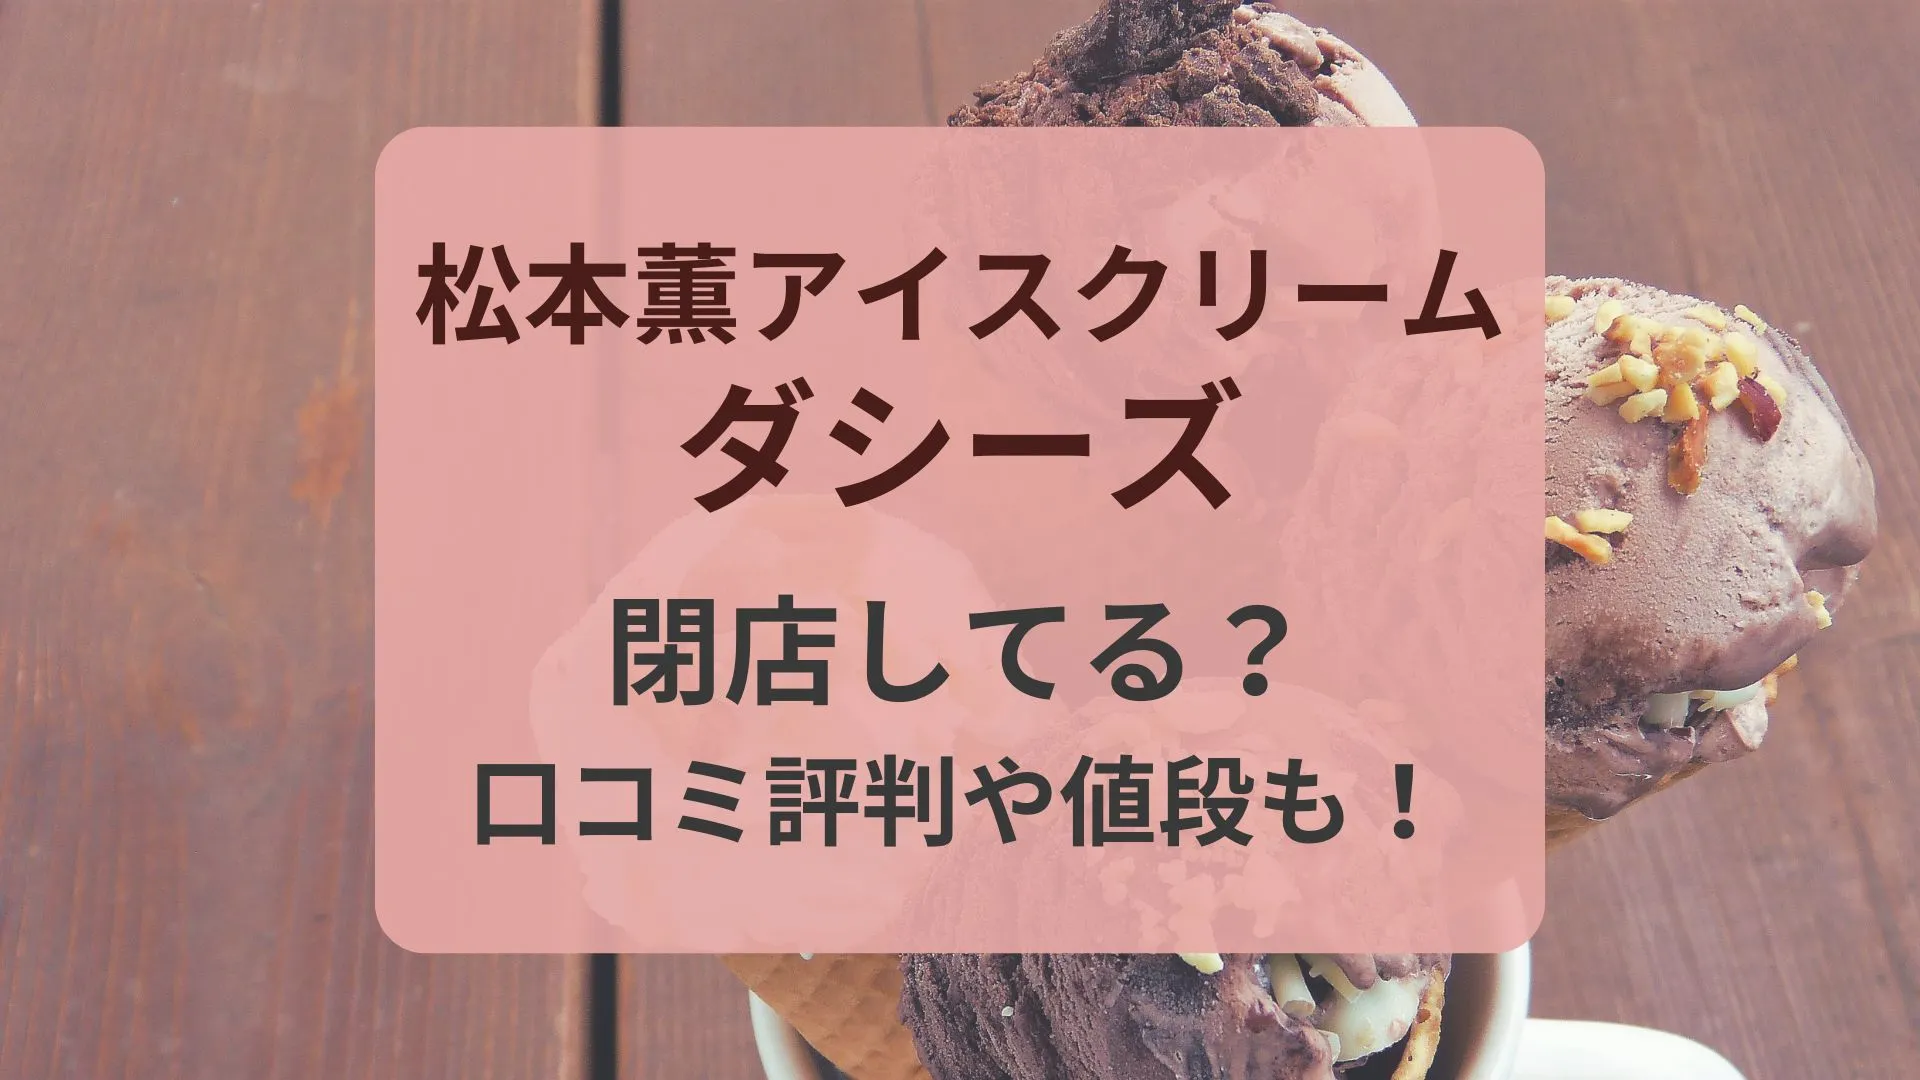 松本薫アイスクリーム店ダシーズ閉店・口コミ評判